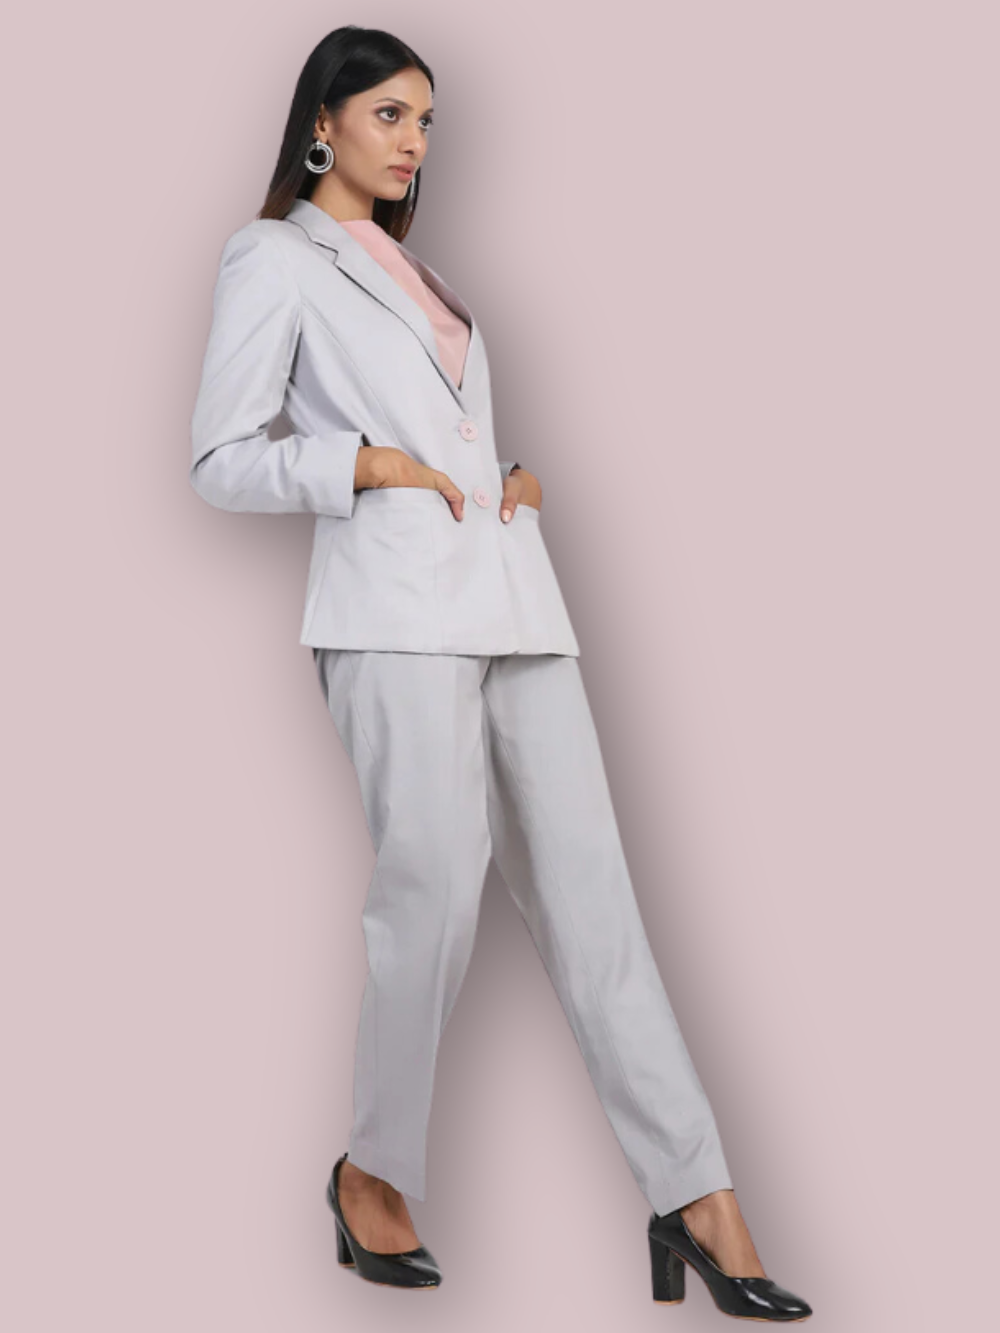 Poly Cotton Pant Suit - Grey